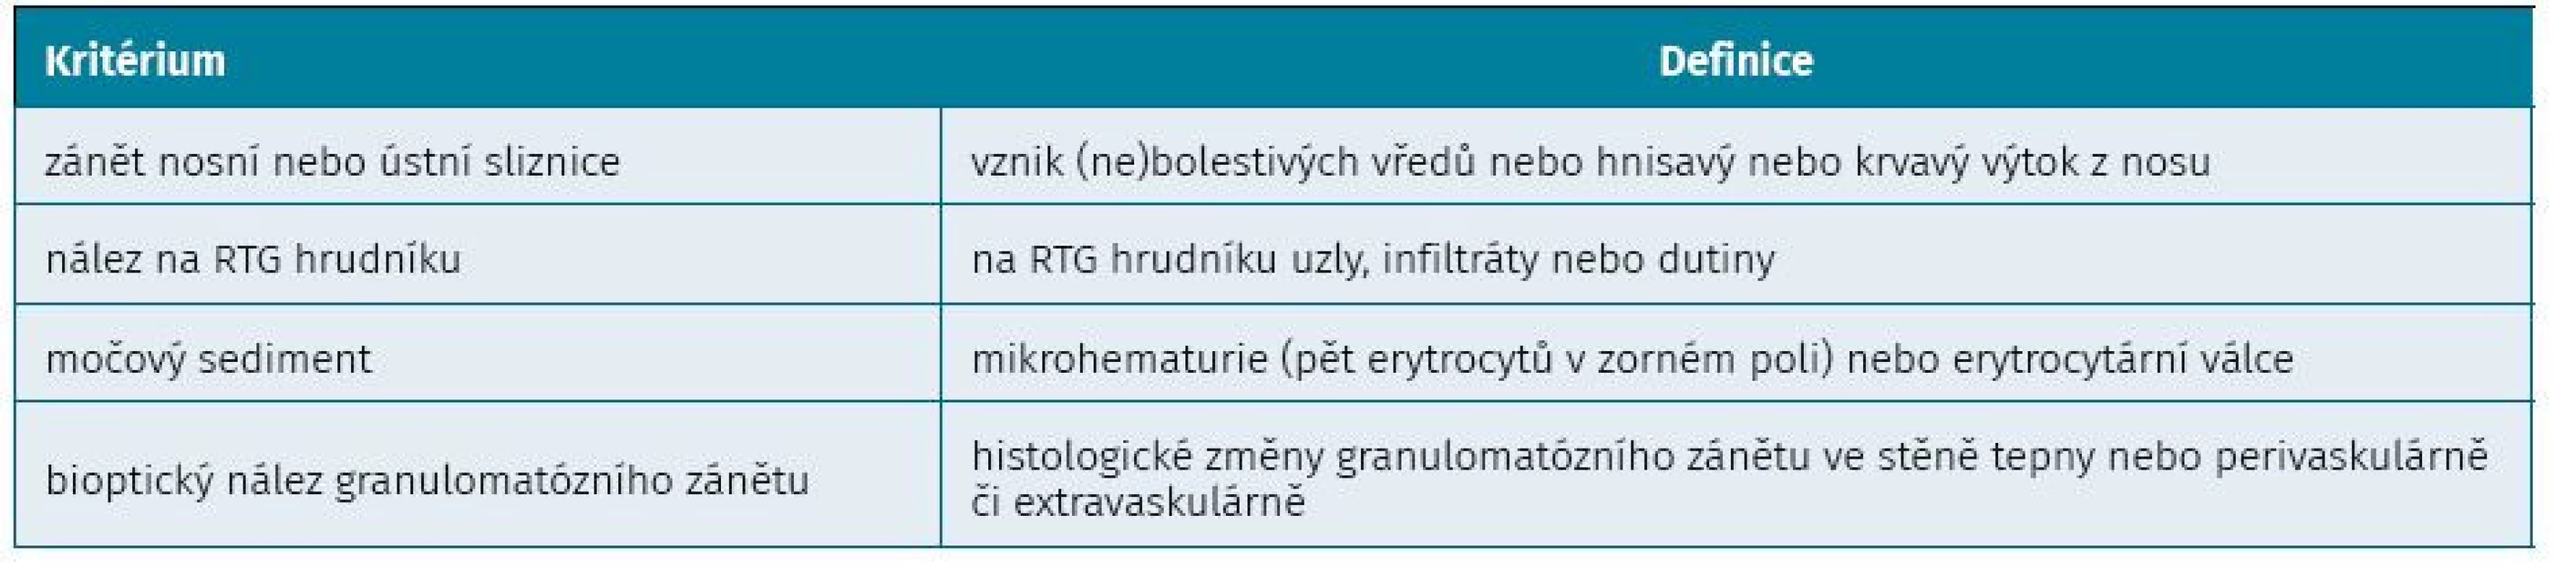 Klasifikační kritéria granulomatózy s polyanIiitidou podle ACR (Americká revmatoloIická společnost) z roku 1990 (7)